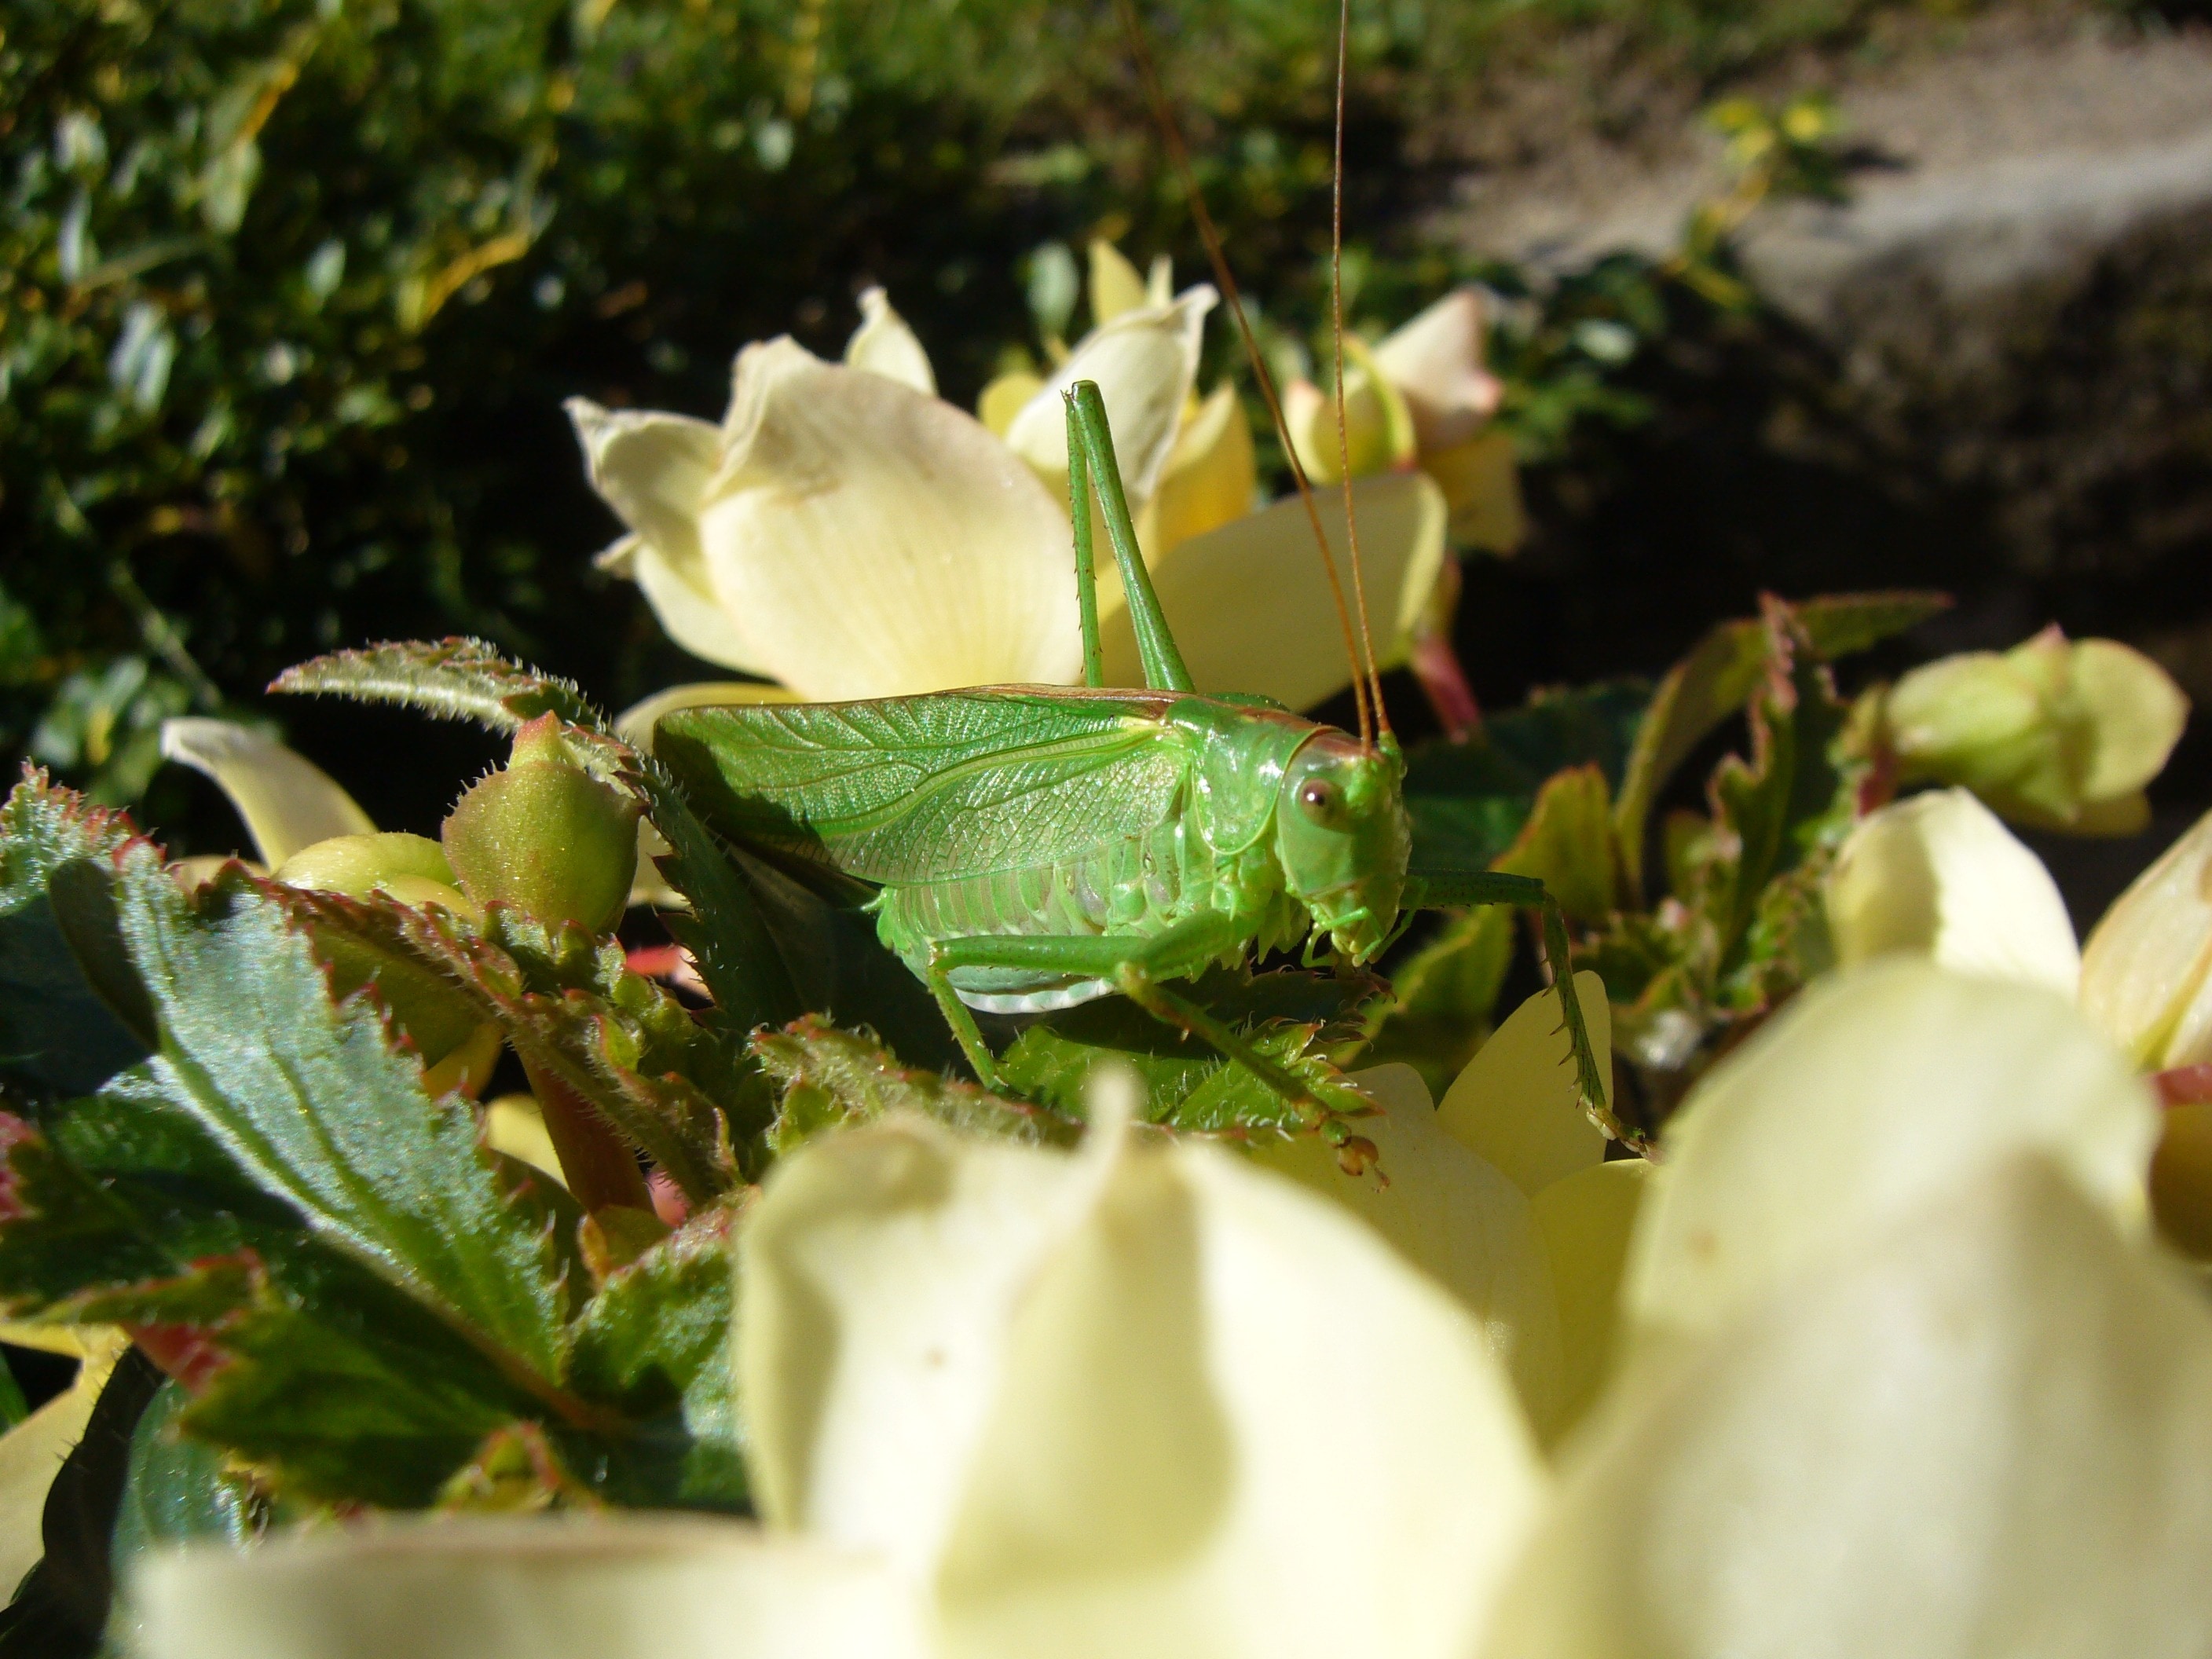 green grasshopper on white petal flower